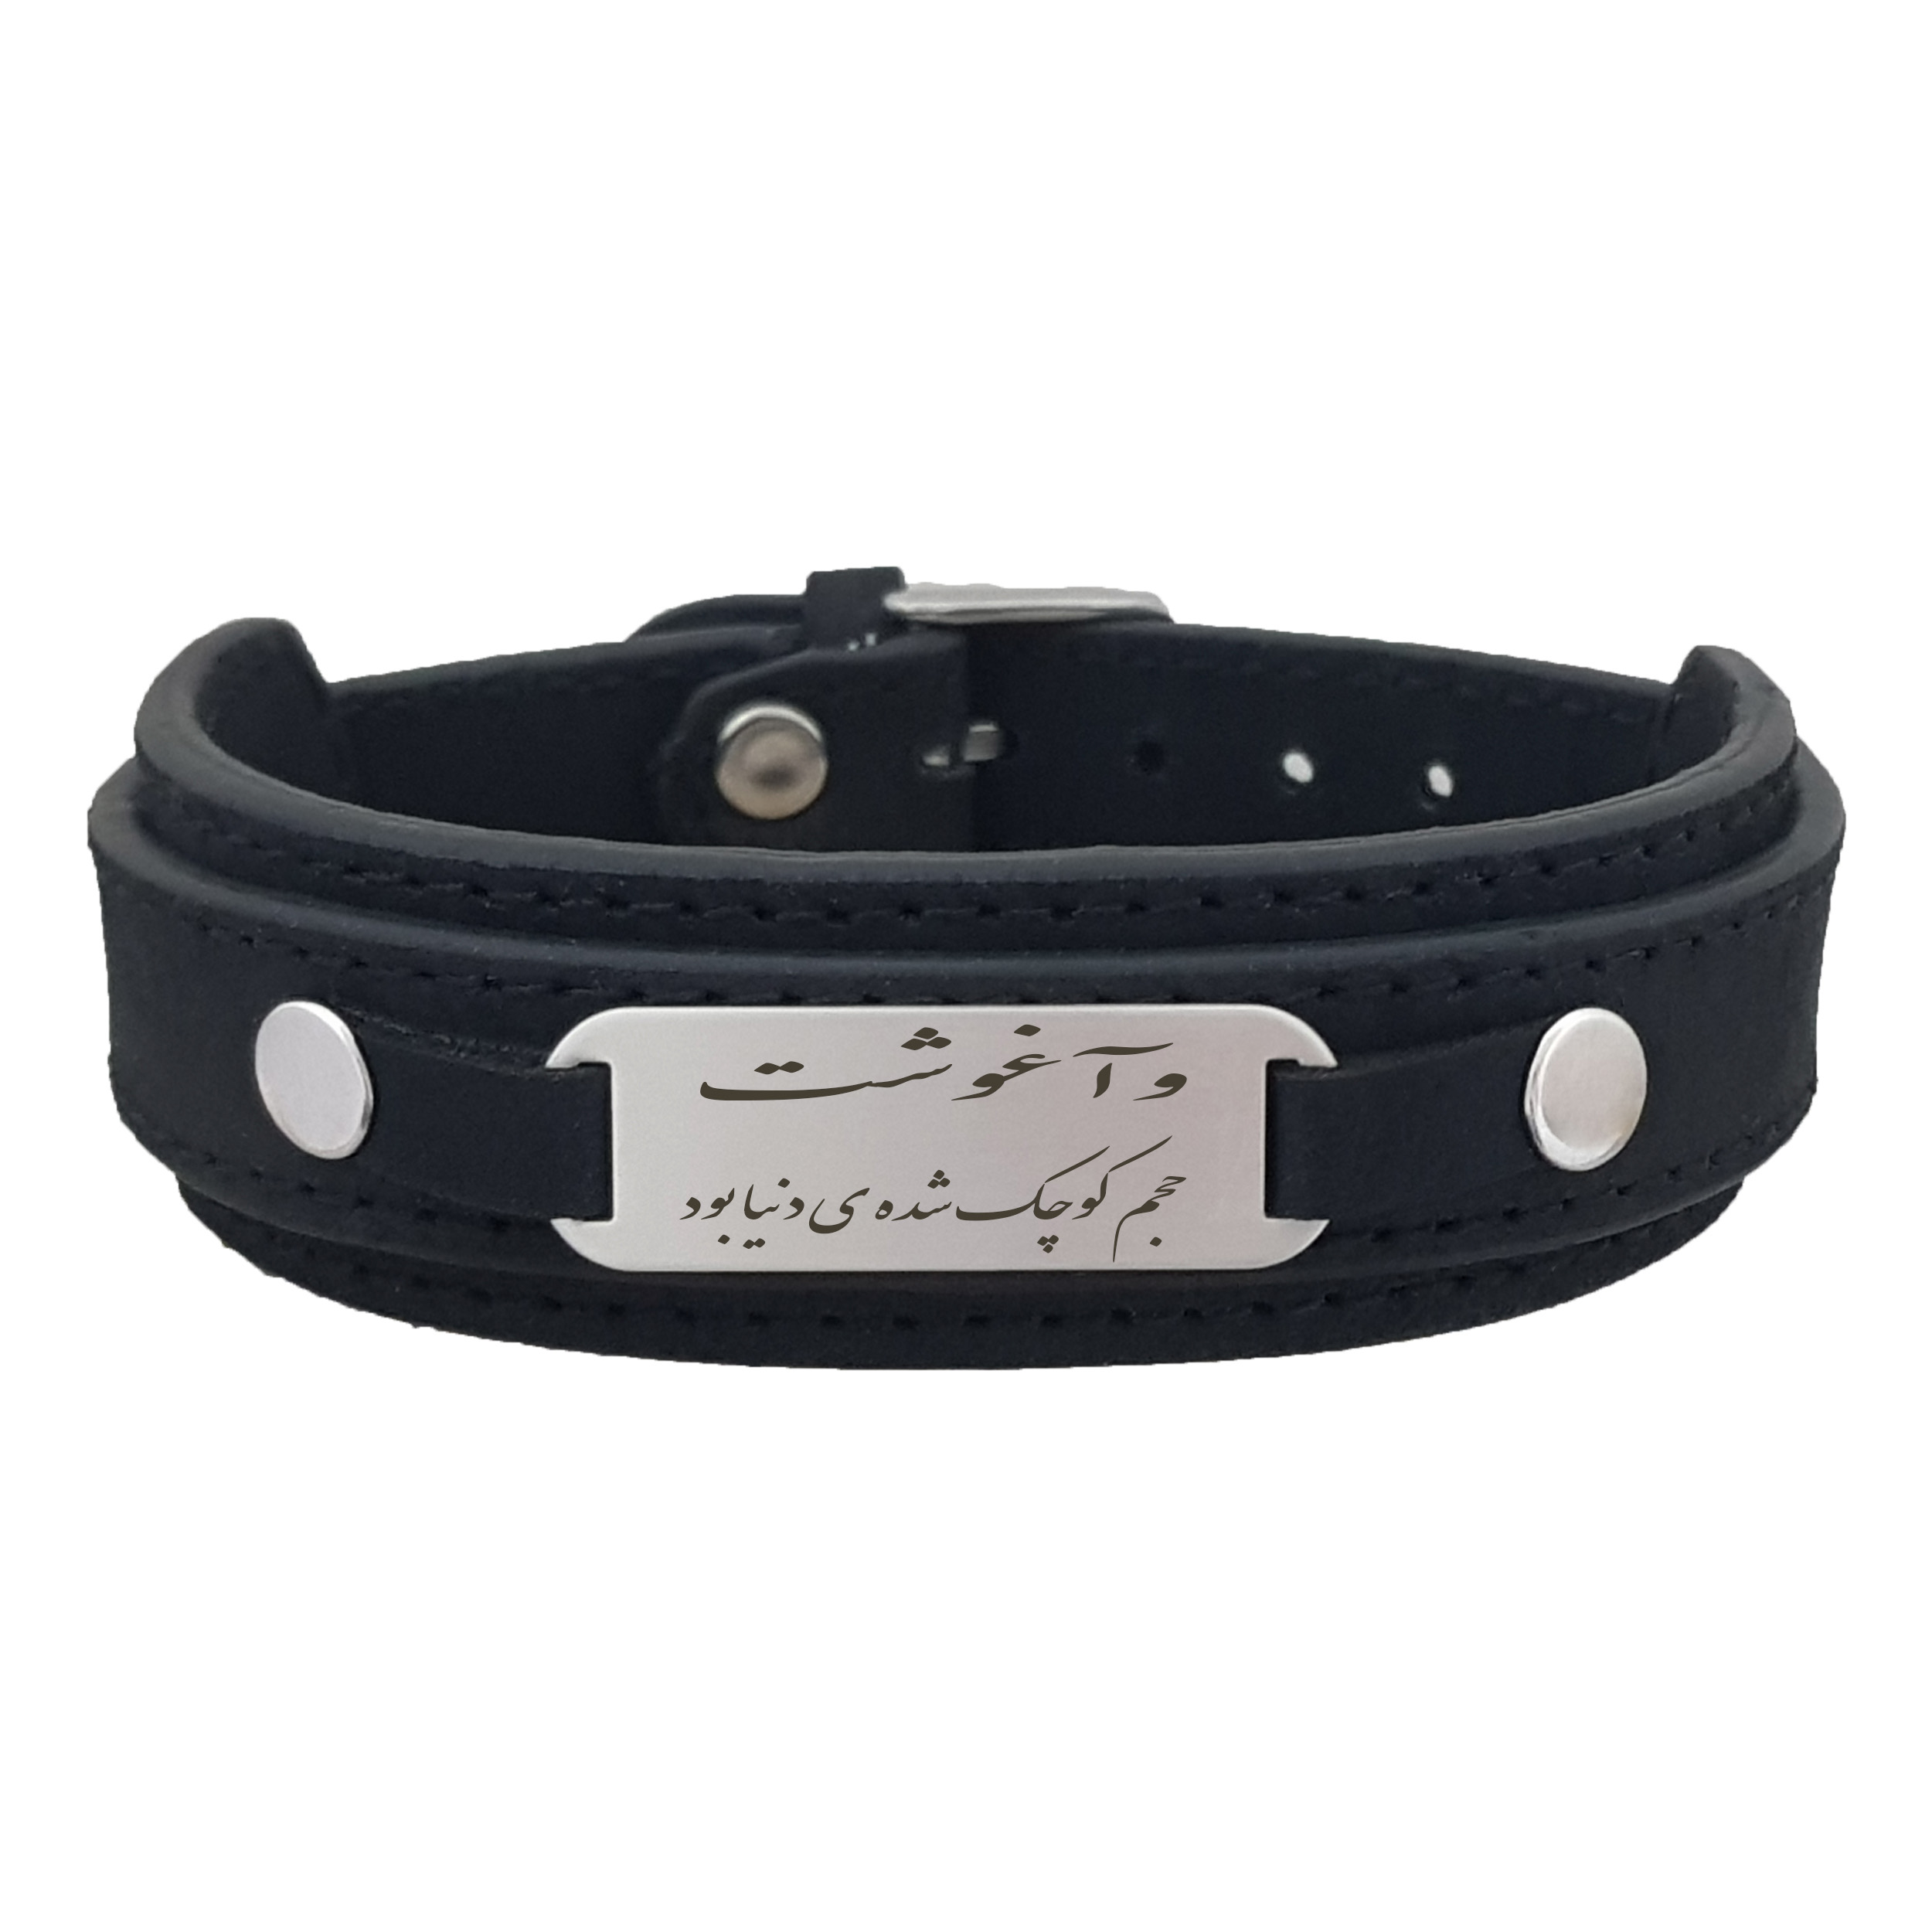 دستبند نقره مردانه ترمه ۱ مدل شعر و آغوشت حجم کوچک شده کد Dcsf 6034